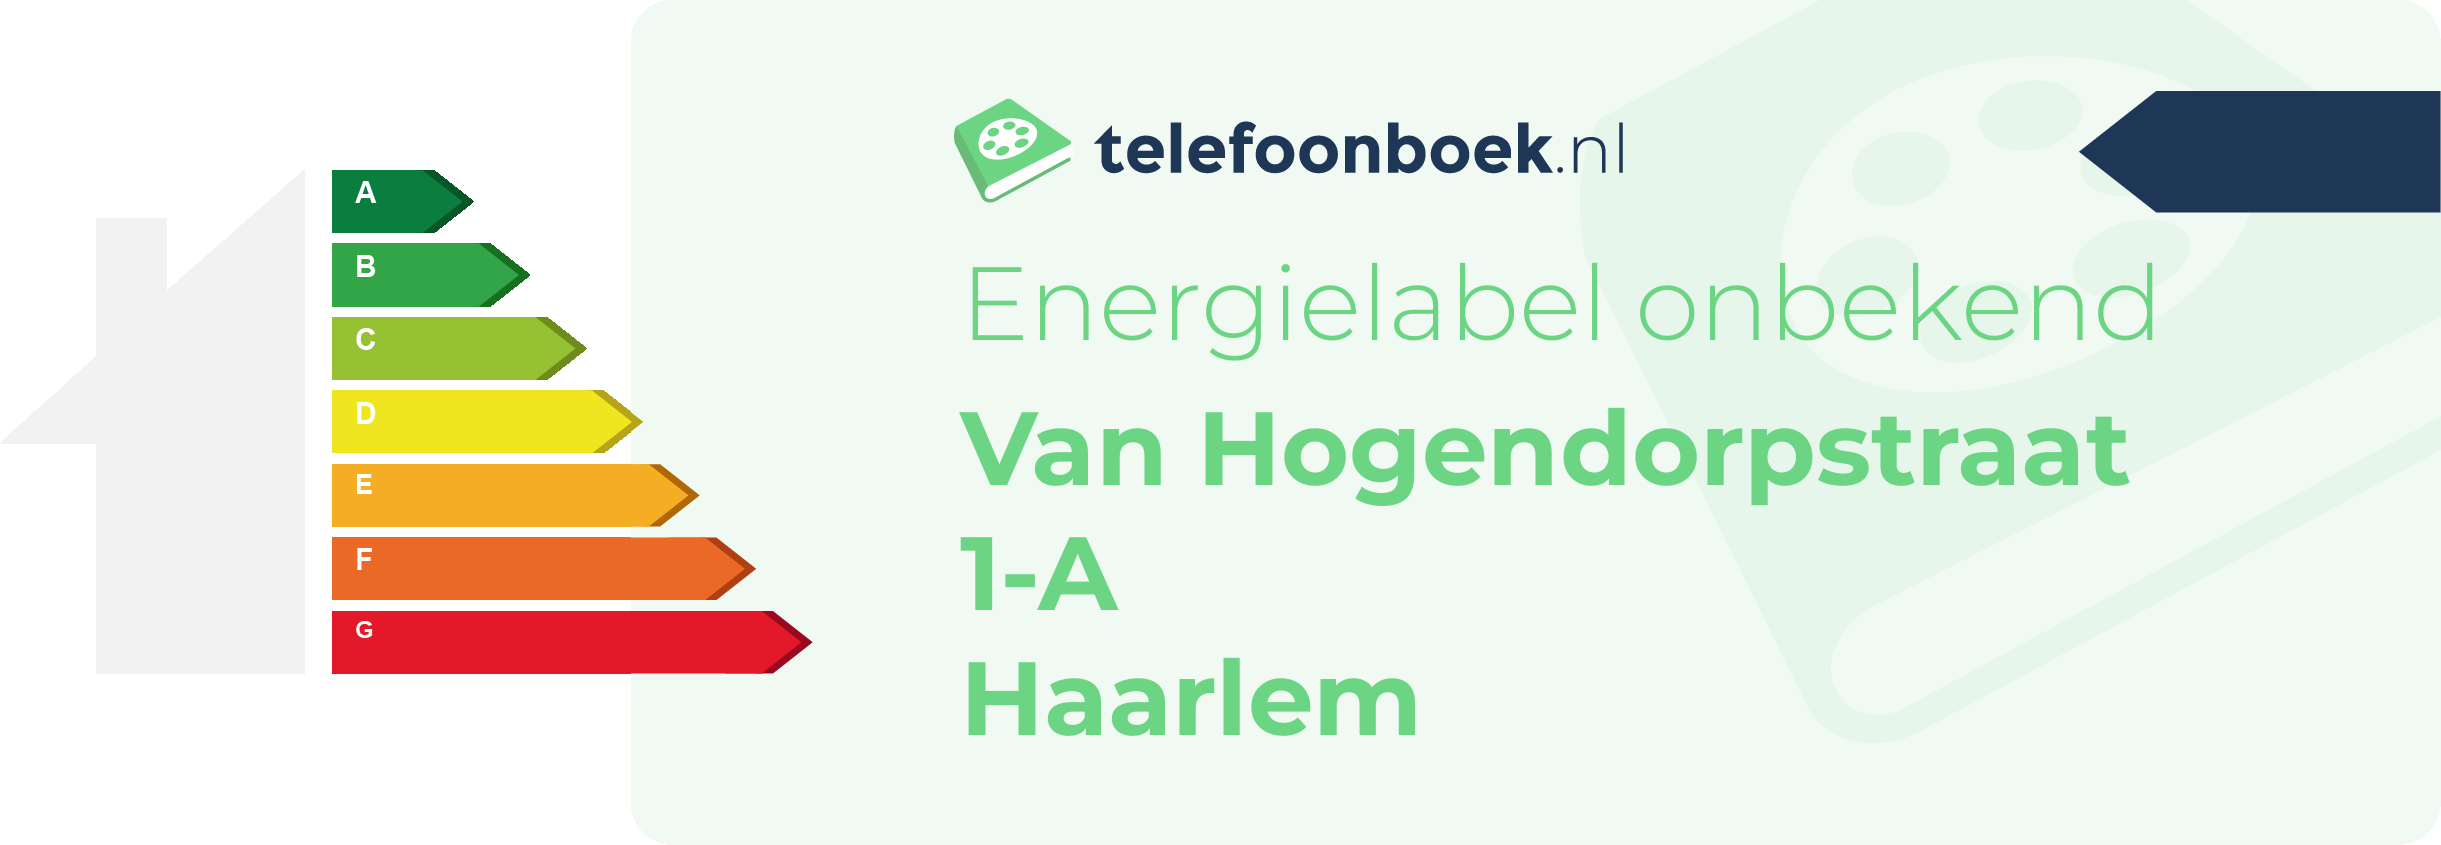 Energielabel Van Hogendorpstraat 1-A Haarlem